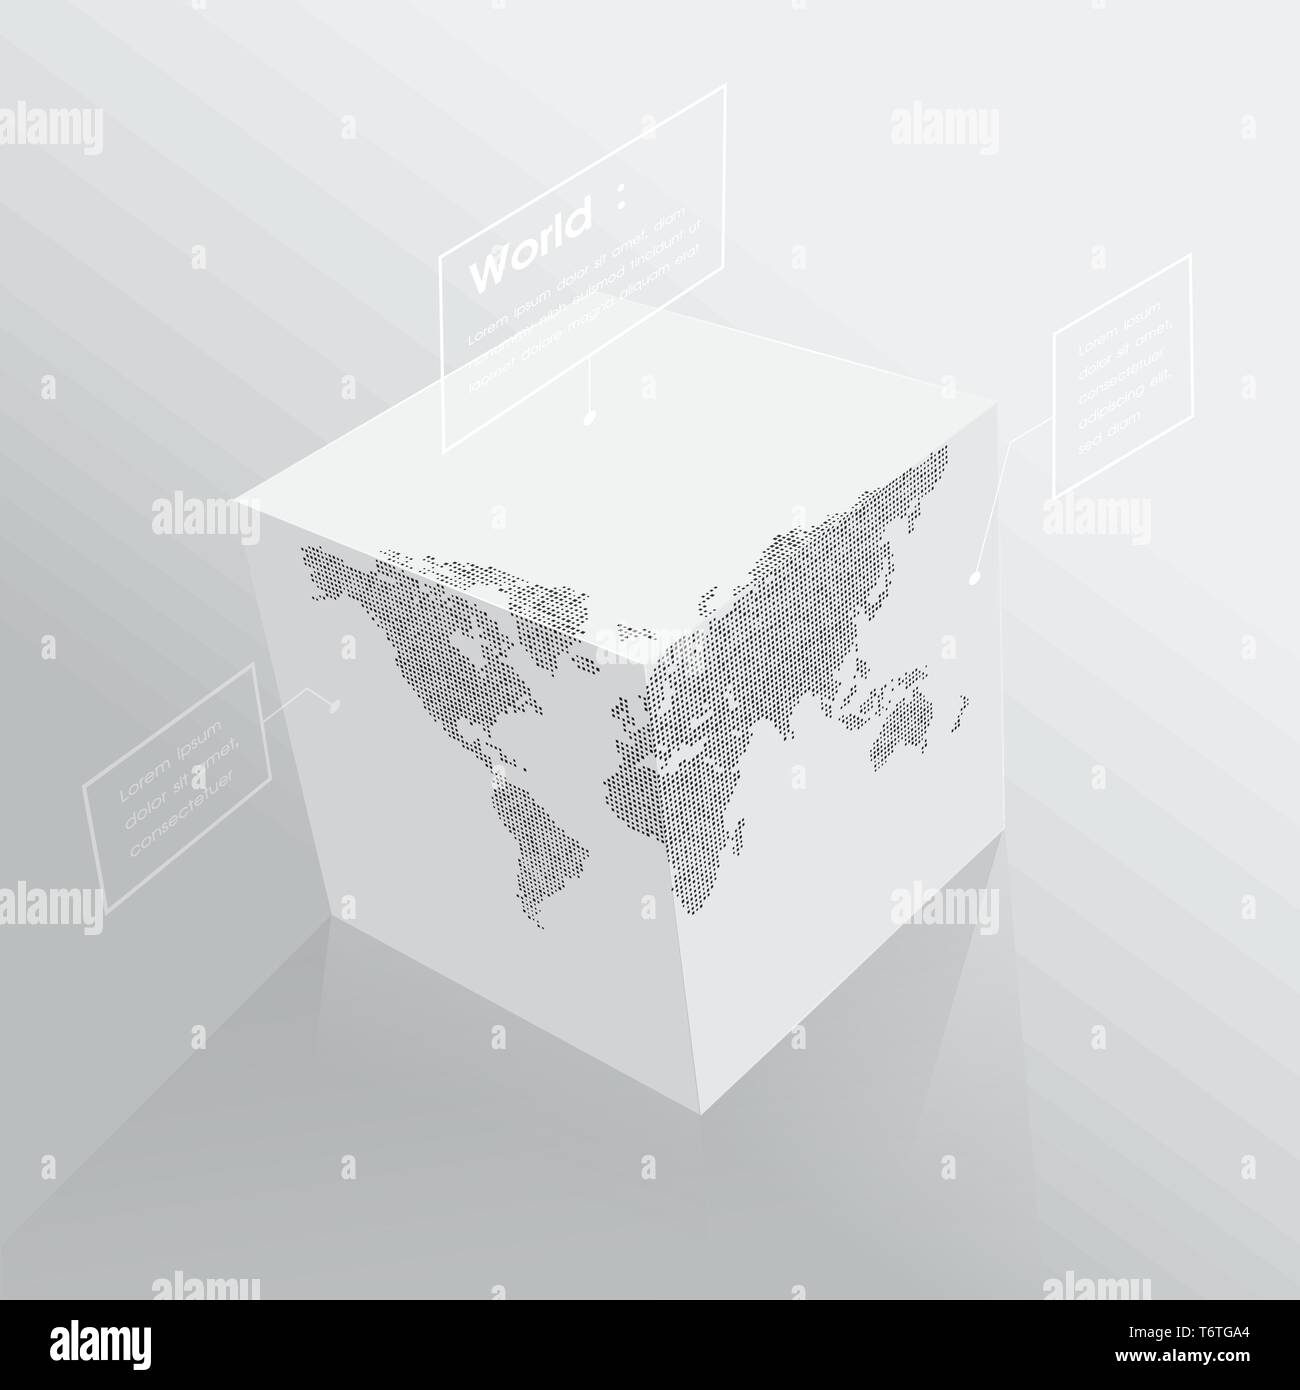 Weltkarte auf 3D-Würfel, monochrome kubische Kugel, mit Etiketten. Vector Illustration Vorlage für Bildung, Wissenschaft, Business Konzepte, Web Präsentationen. Stock Vektor